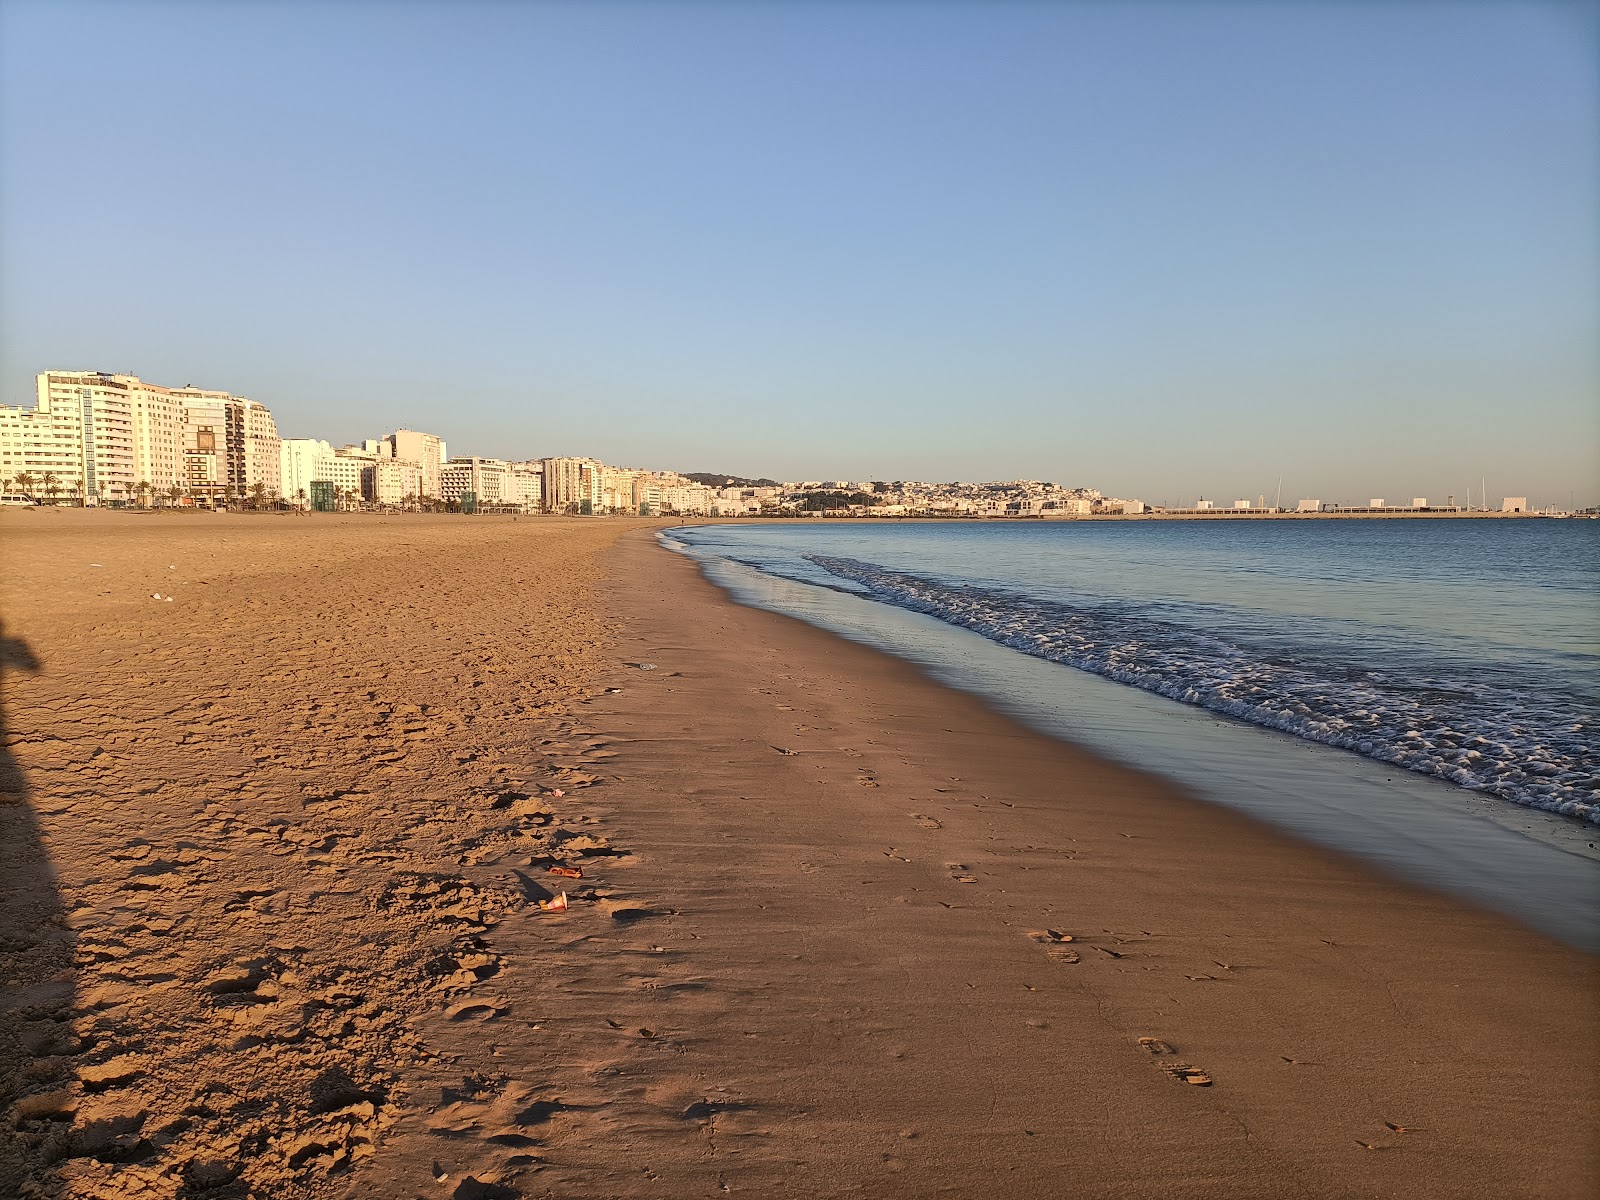 Foto af Malabata Strand (Tanger) - populært sted blandt afslapningskendere